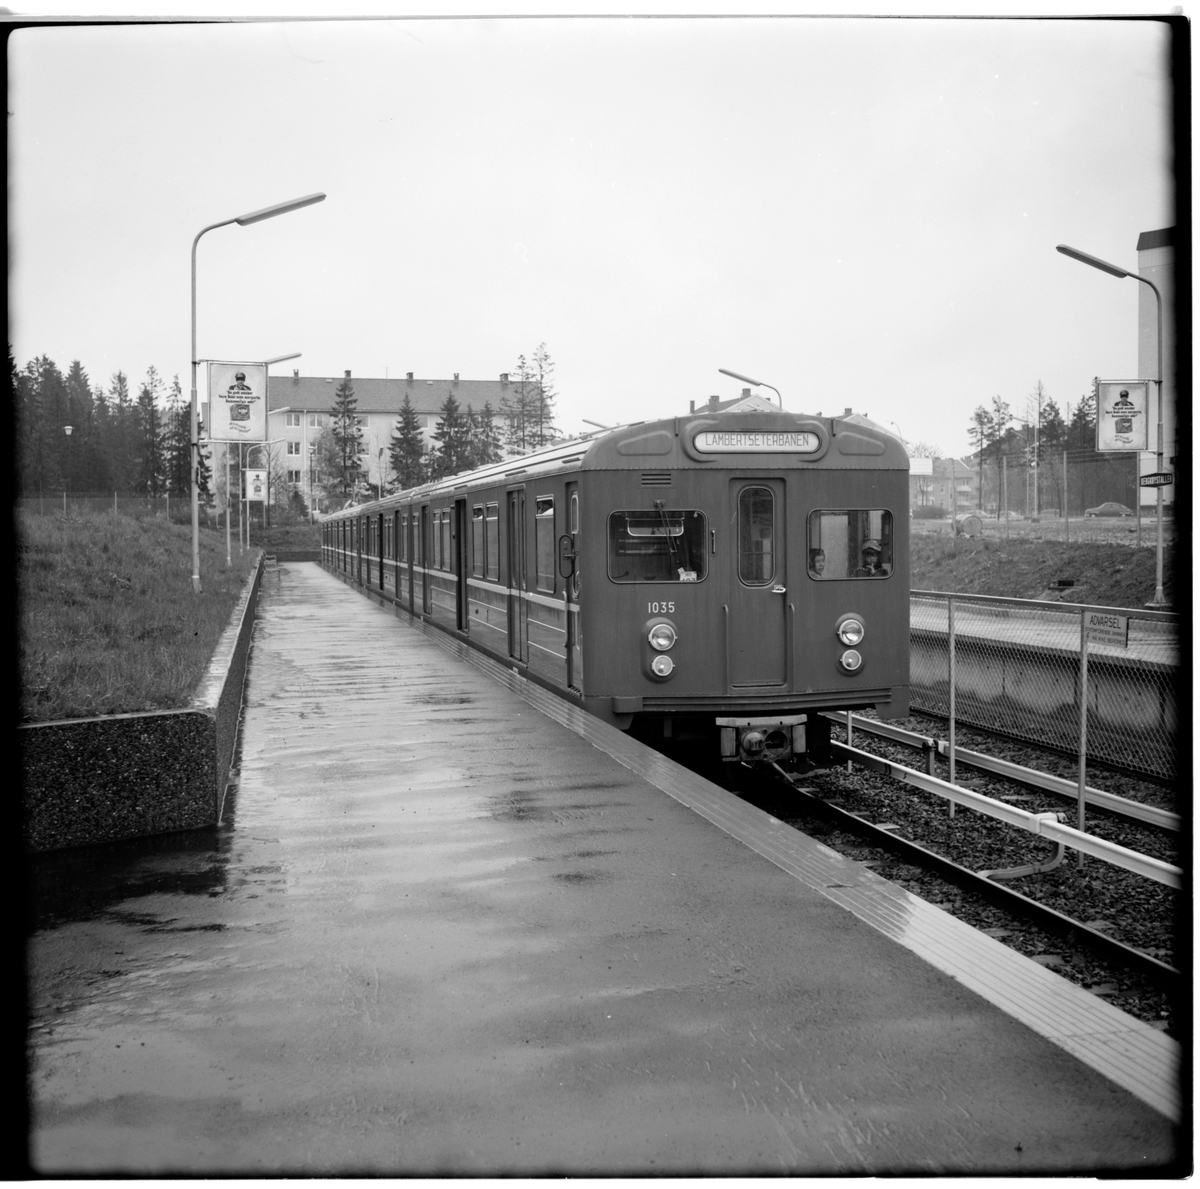 Aksjeselskap Oslo Sporveier, OS T1-1 1035 på Bergstallen station.